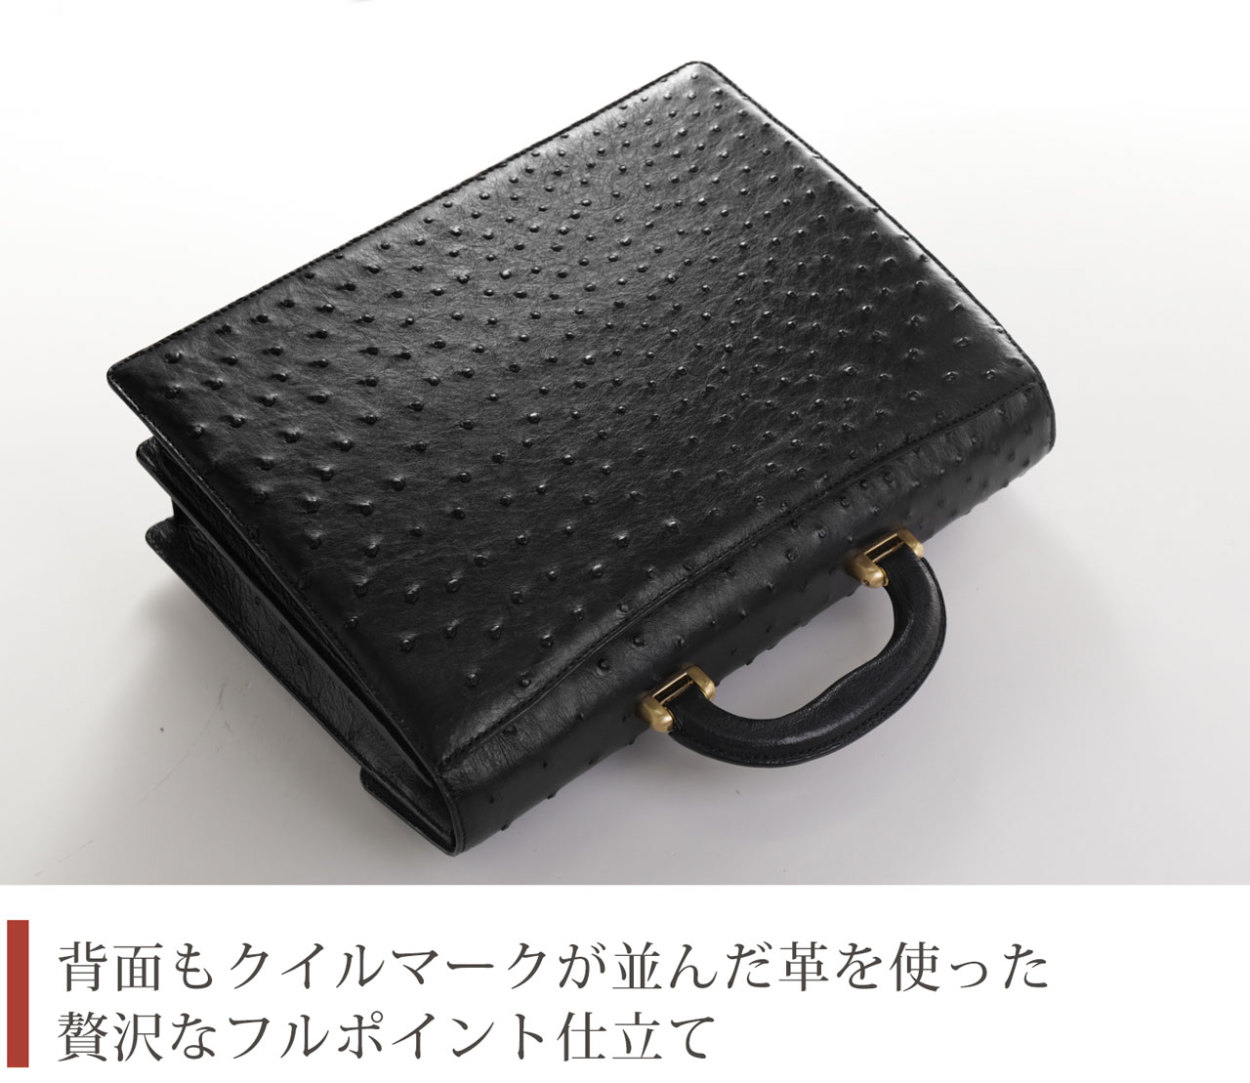 オーストリッチ メンズ バッグ 32cm ダイヤルロック フルポイント 日本